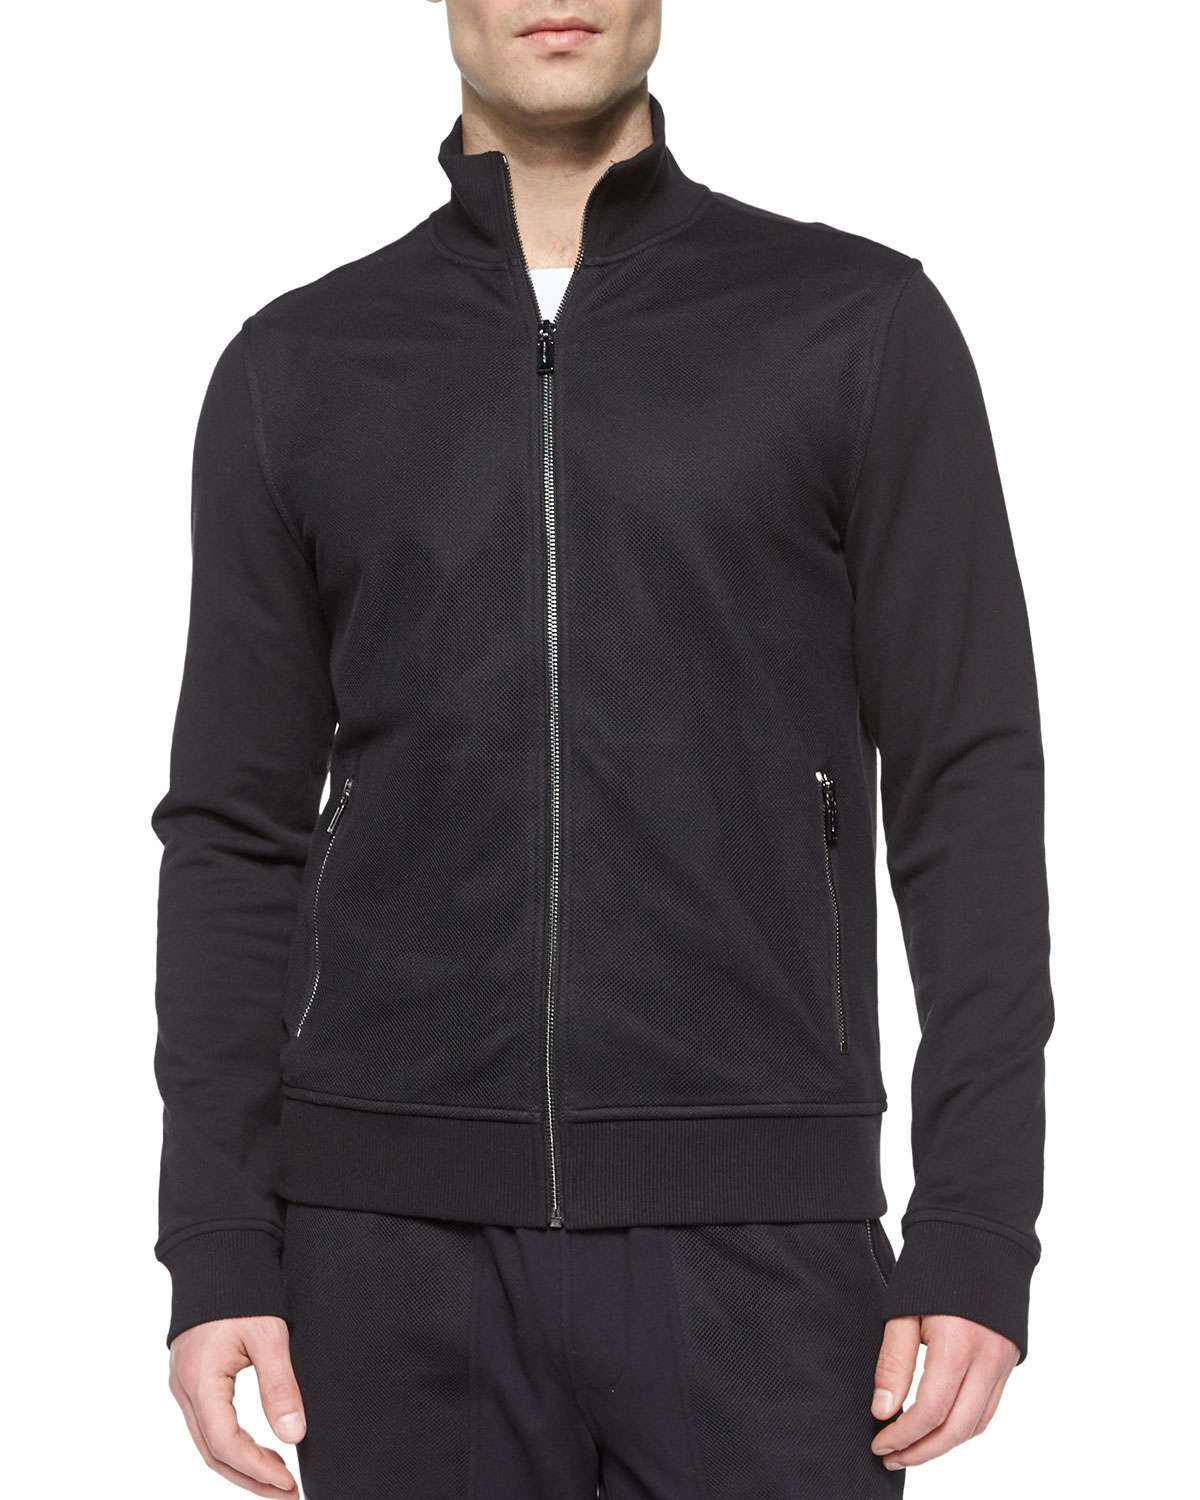 Lyst - Michael Kors Full-zip Cotton Track Jacket in Black for Men